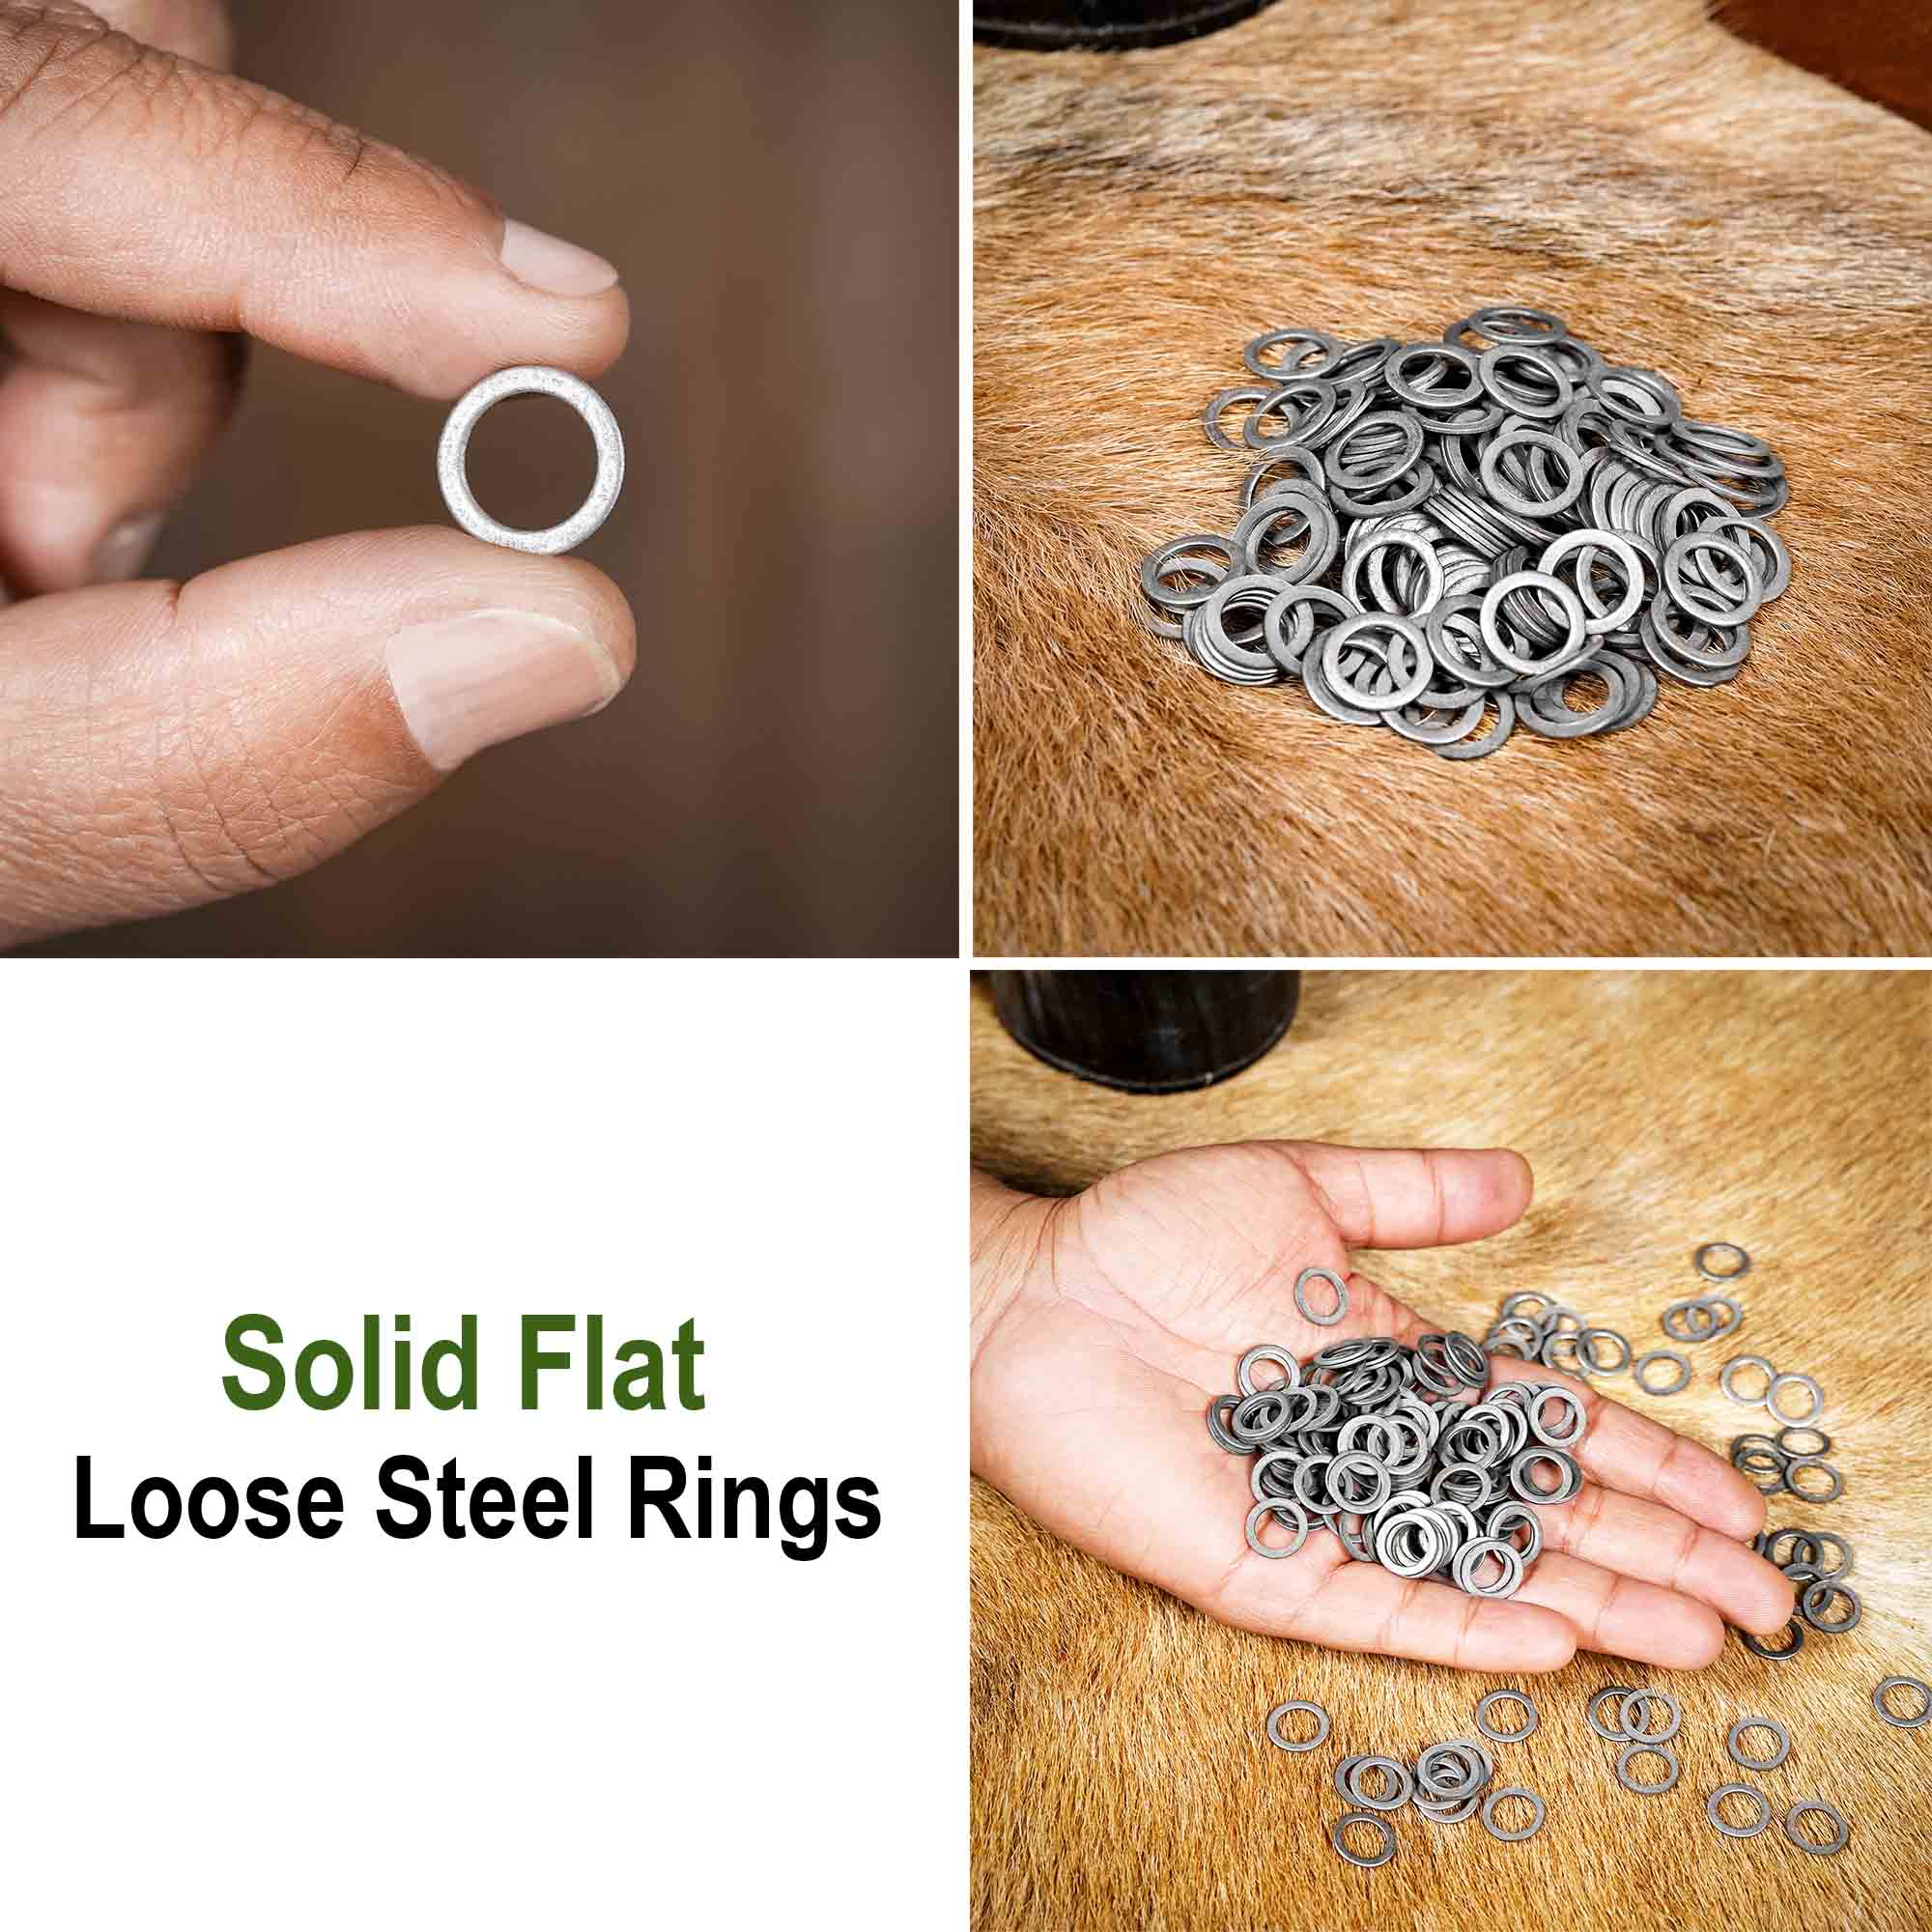 1 kg Loose Chainmail Rings - Blackened Solid Mild Steel Flat Rings6mm